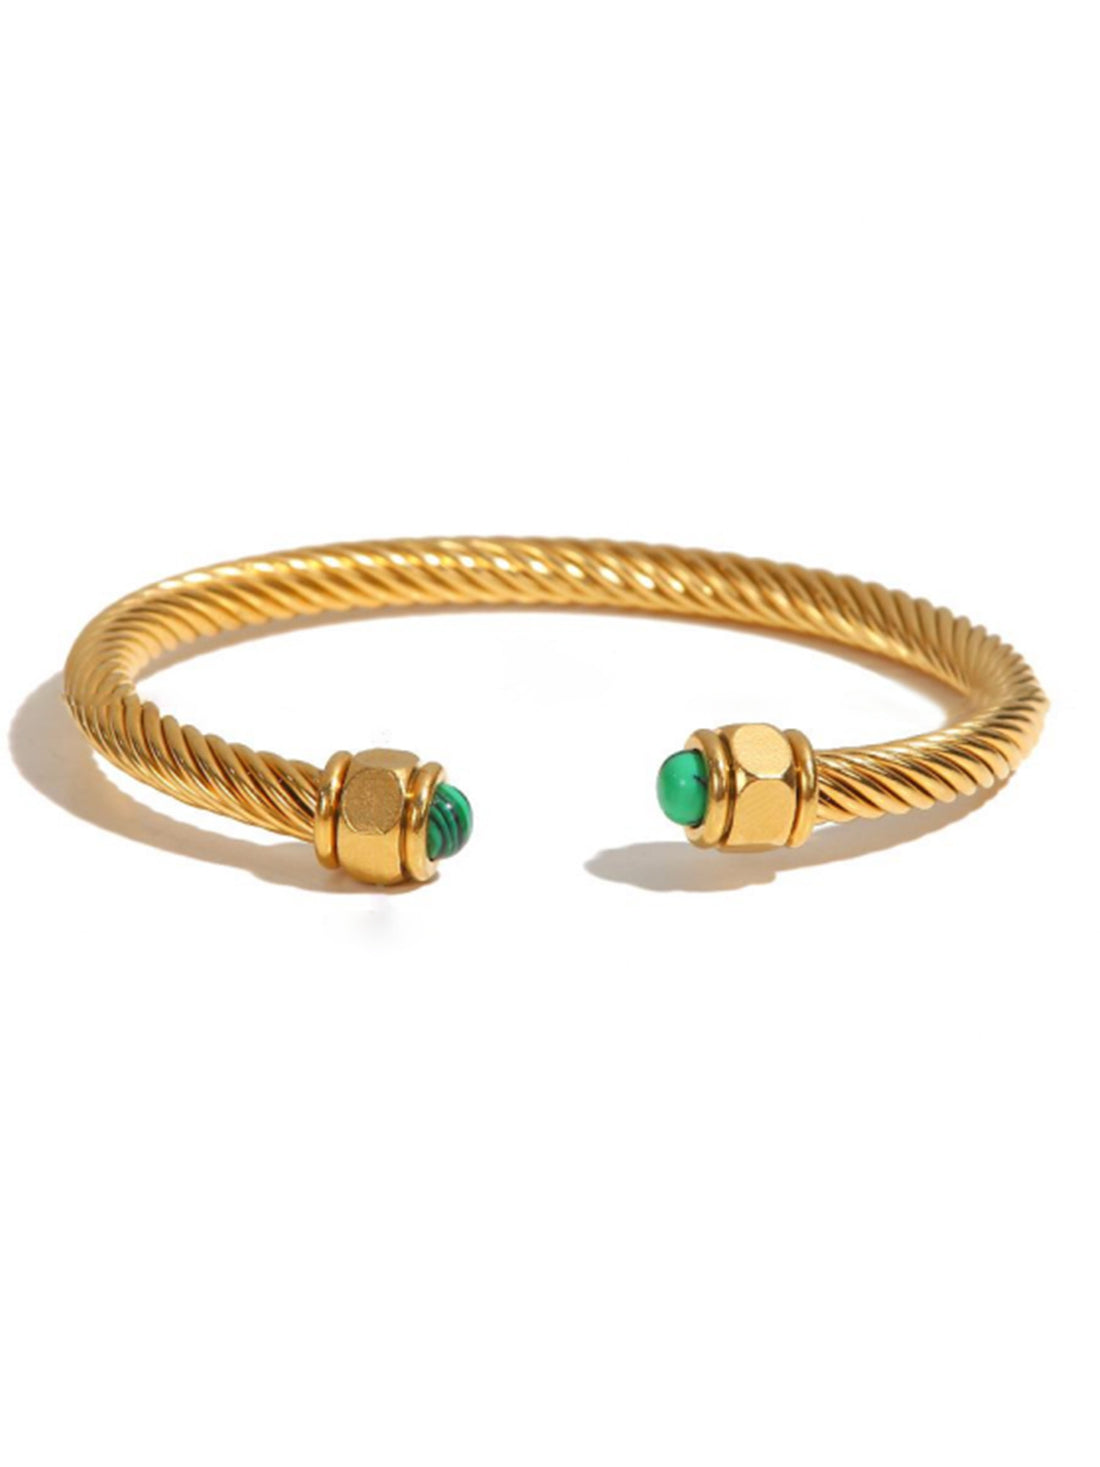 Bracelet Sao Paolo - Jewelry-InStyle